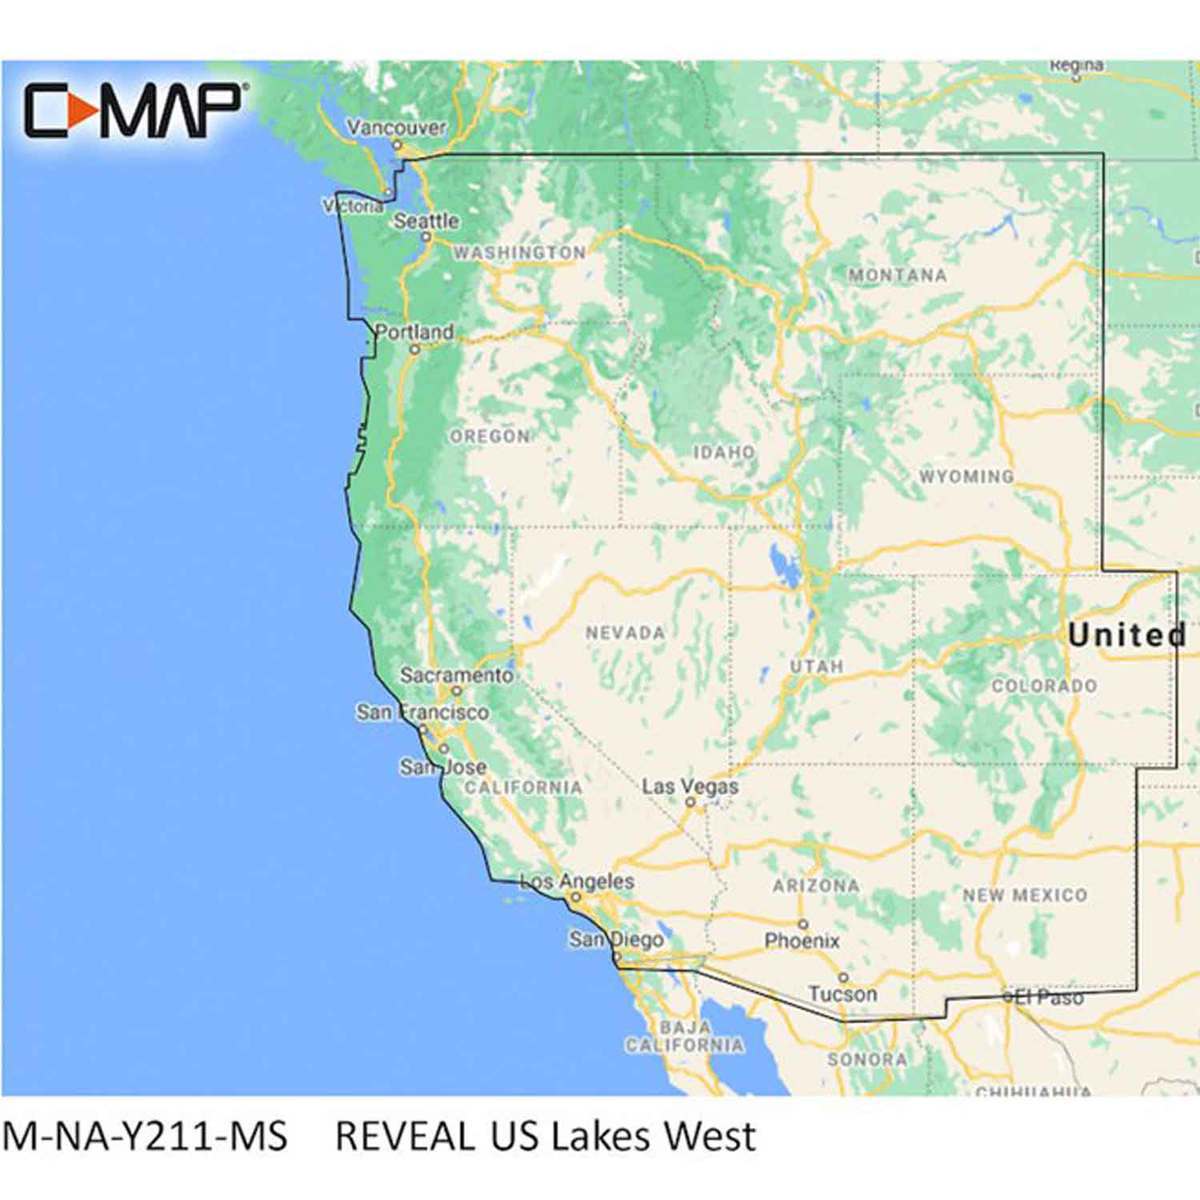 Lowrance C Map Reveal Us Lakes Map Software West 1703753 1 ?context=bWFzdGVyfGltYWdlc3wxMDUyNjd8aW1hZ2UvanBlZ3xpbWFnZXMvaDFiL2hkMy85OTM1MTc5ODc0MzM0LmpwZ3xmM2U0OTM2MDViN2NlNzdlMjliZjJhMTI0MTViZWZjYWM1NzNmOTYyNWJmOWMzY2ZhM2YyNDFlZGFhY2MzMDMx